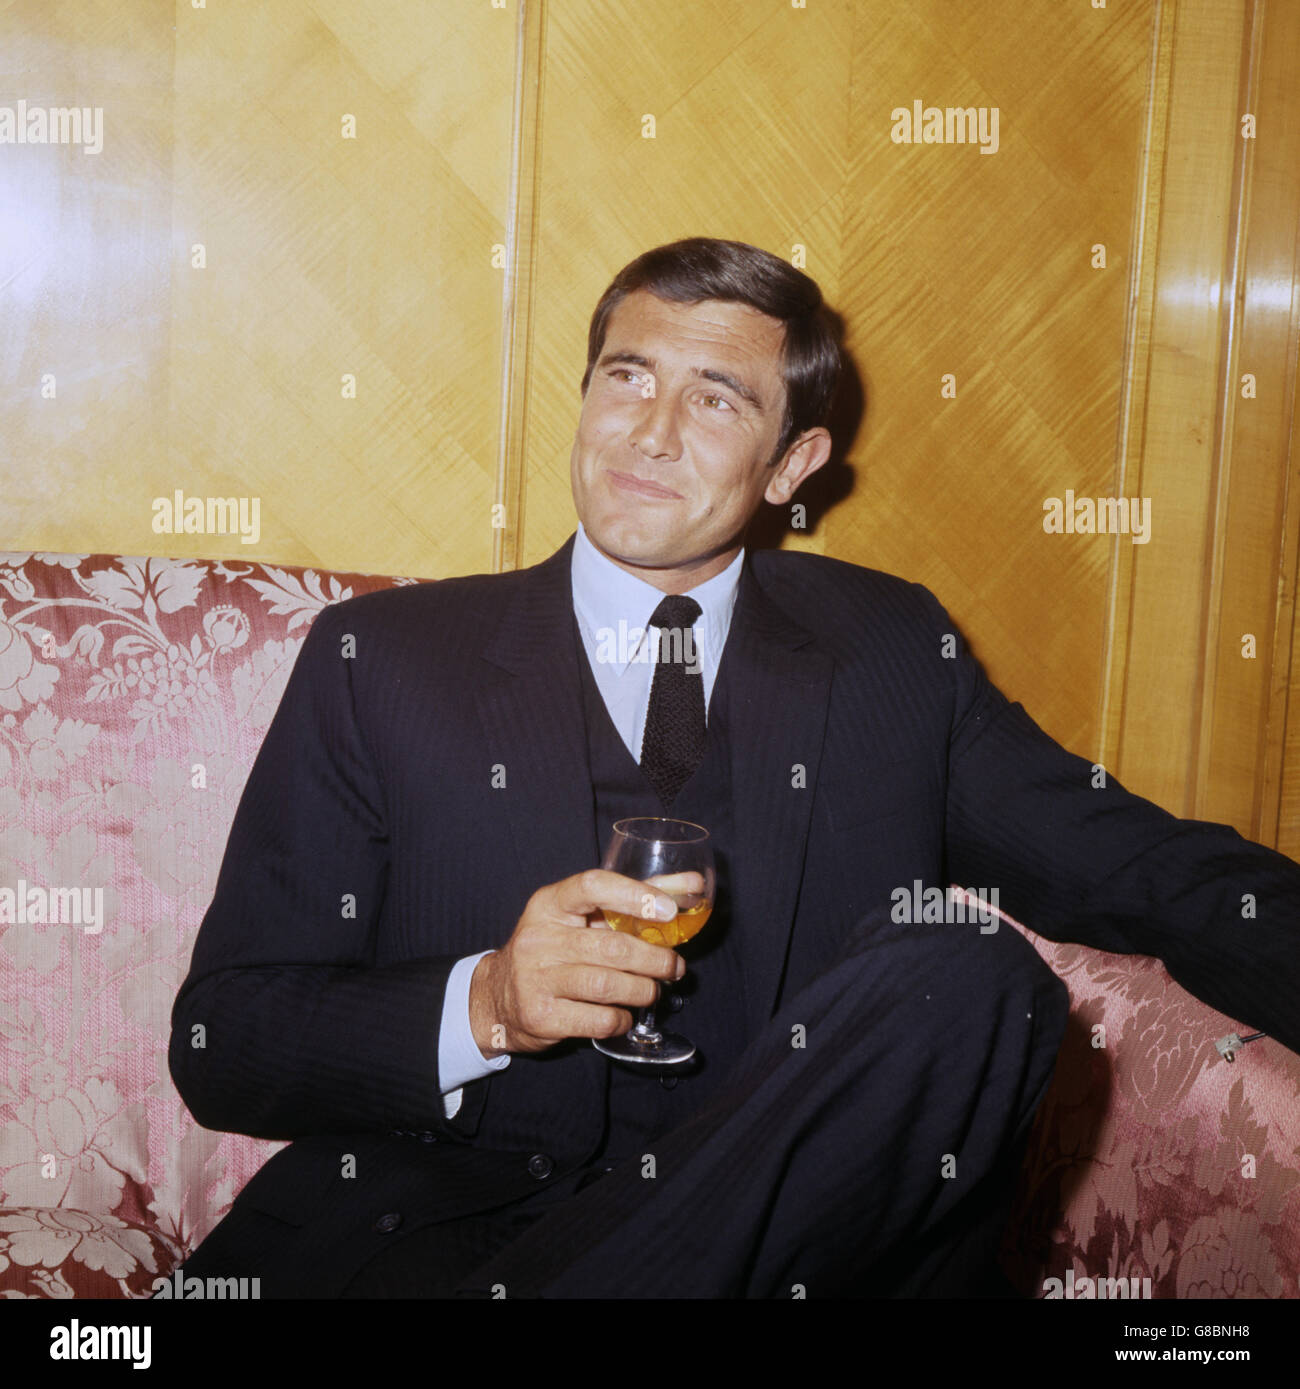 El actor australiano George Lazenby en una recepción de prensa en Londres. Está previsto que interprete a James Bond en el servicio secreto de su Majestad. Foto de stock